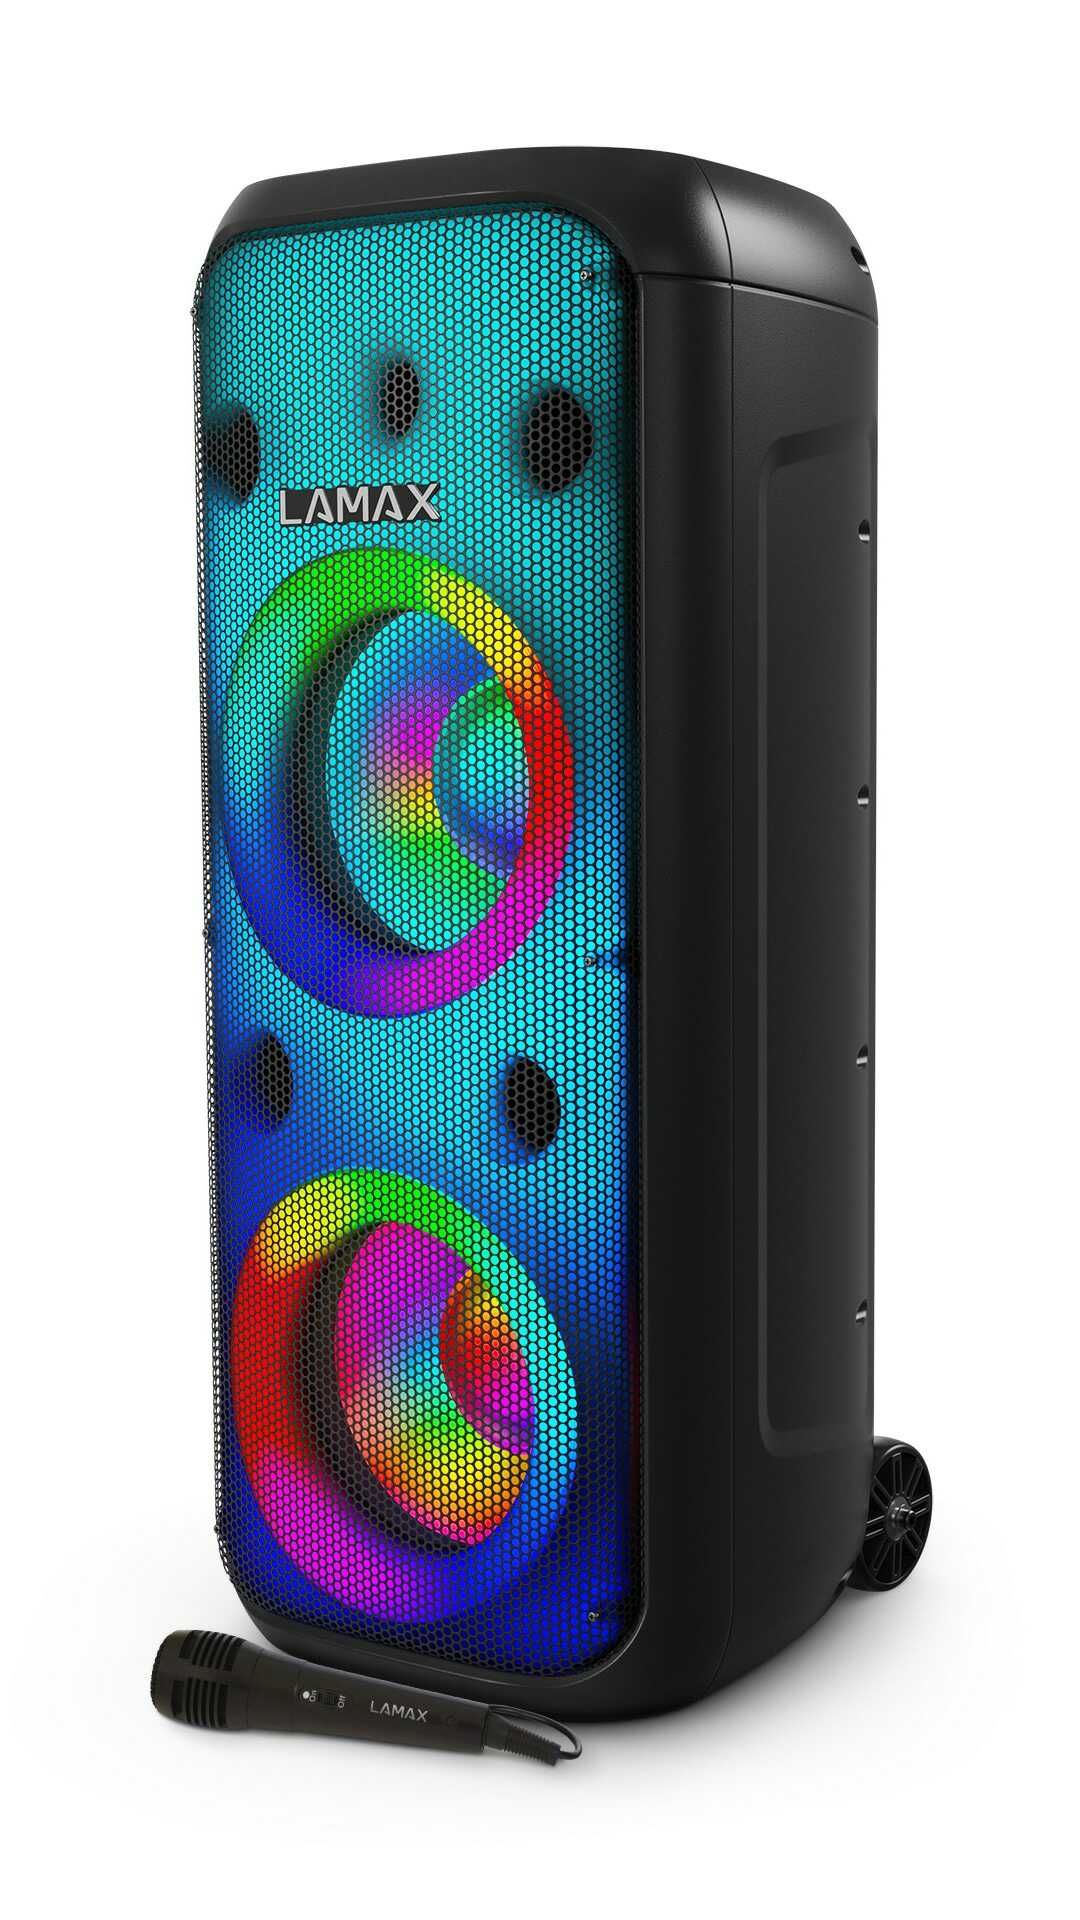  Party zvočnik Lamax Partyboombox 700 ogromen glasbeni nastop senzacionalen zvok svetlobni šov baterija vodoodpornost USB SD reža karaoke